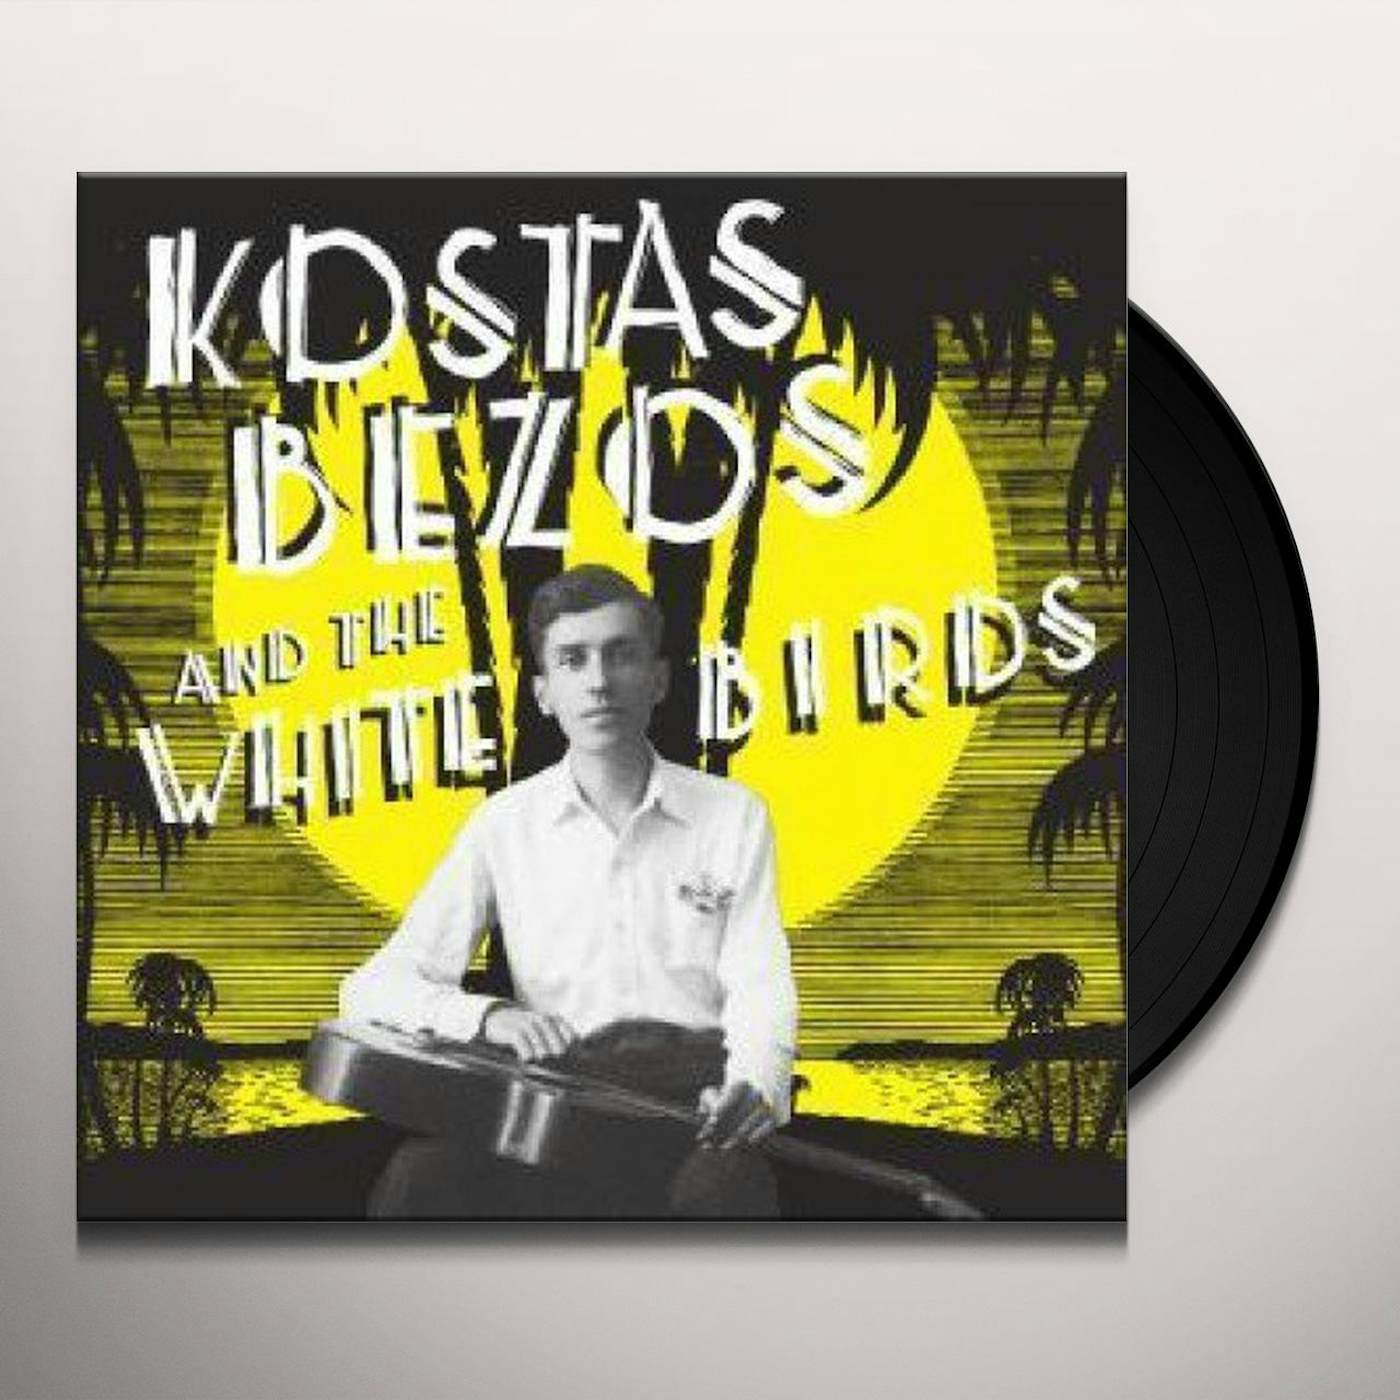 Kostas Bezos / White Birds